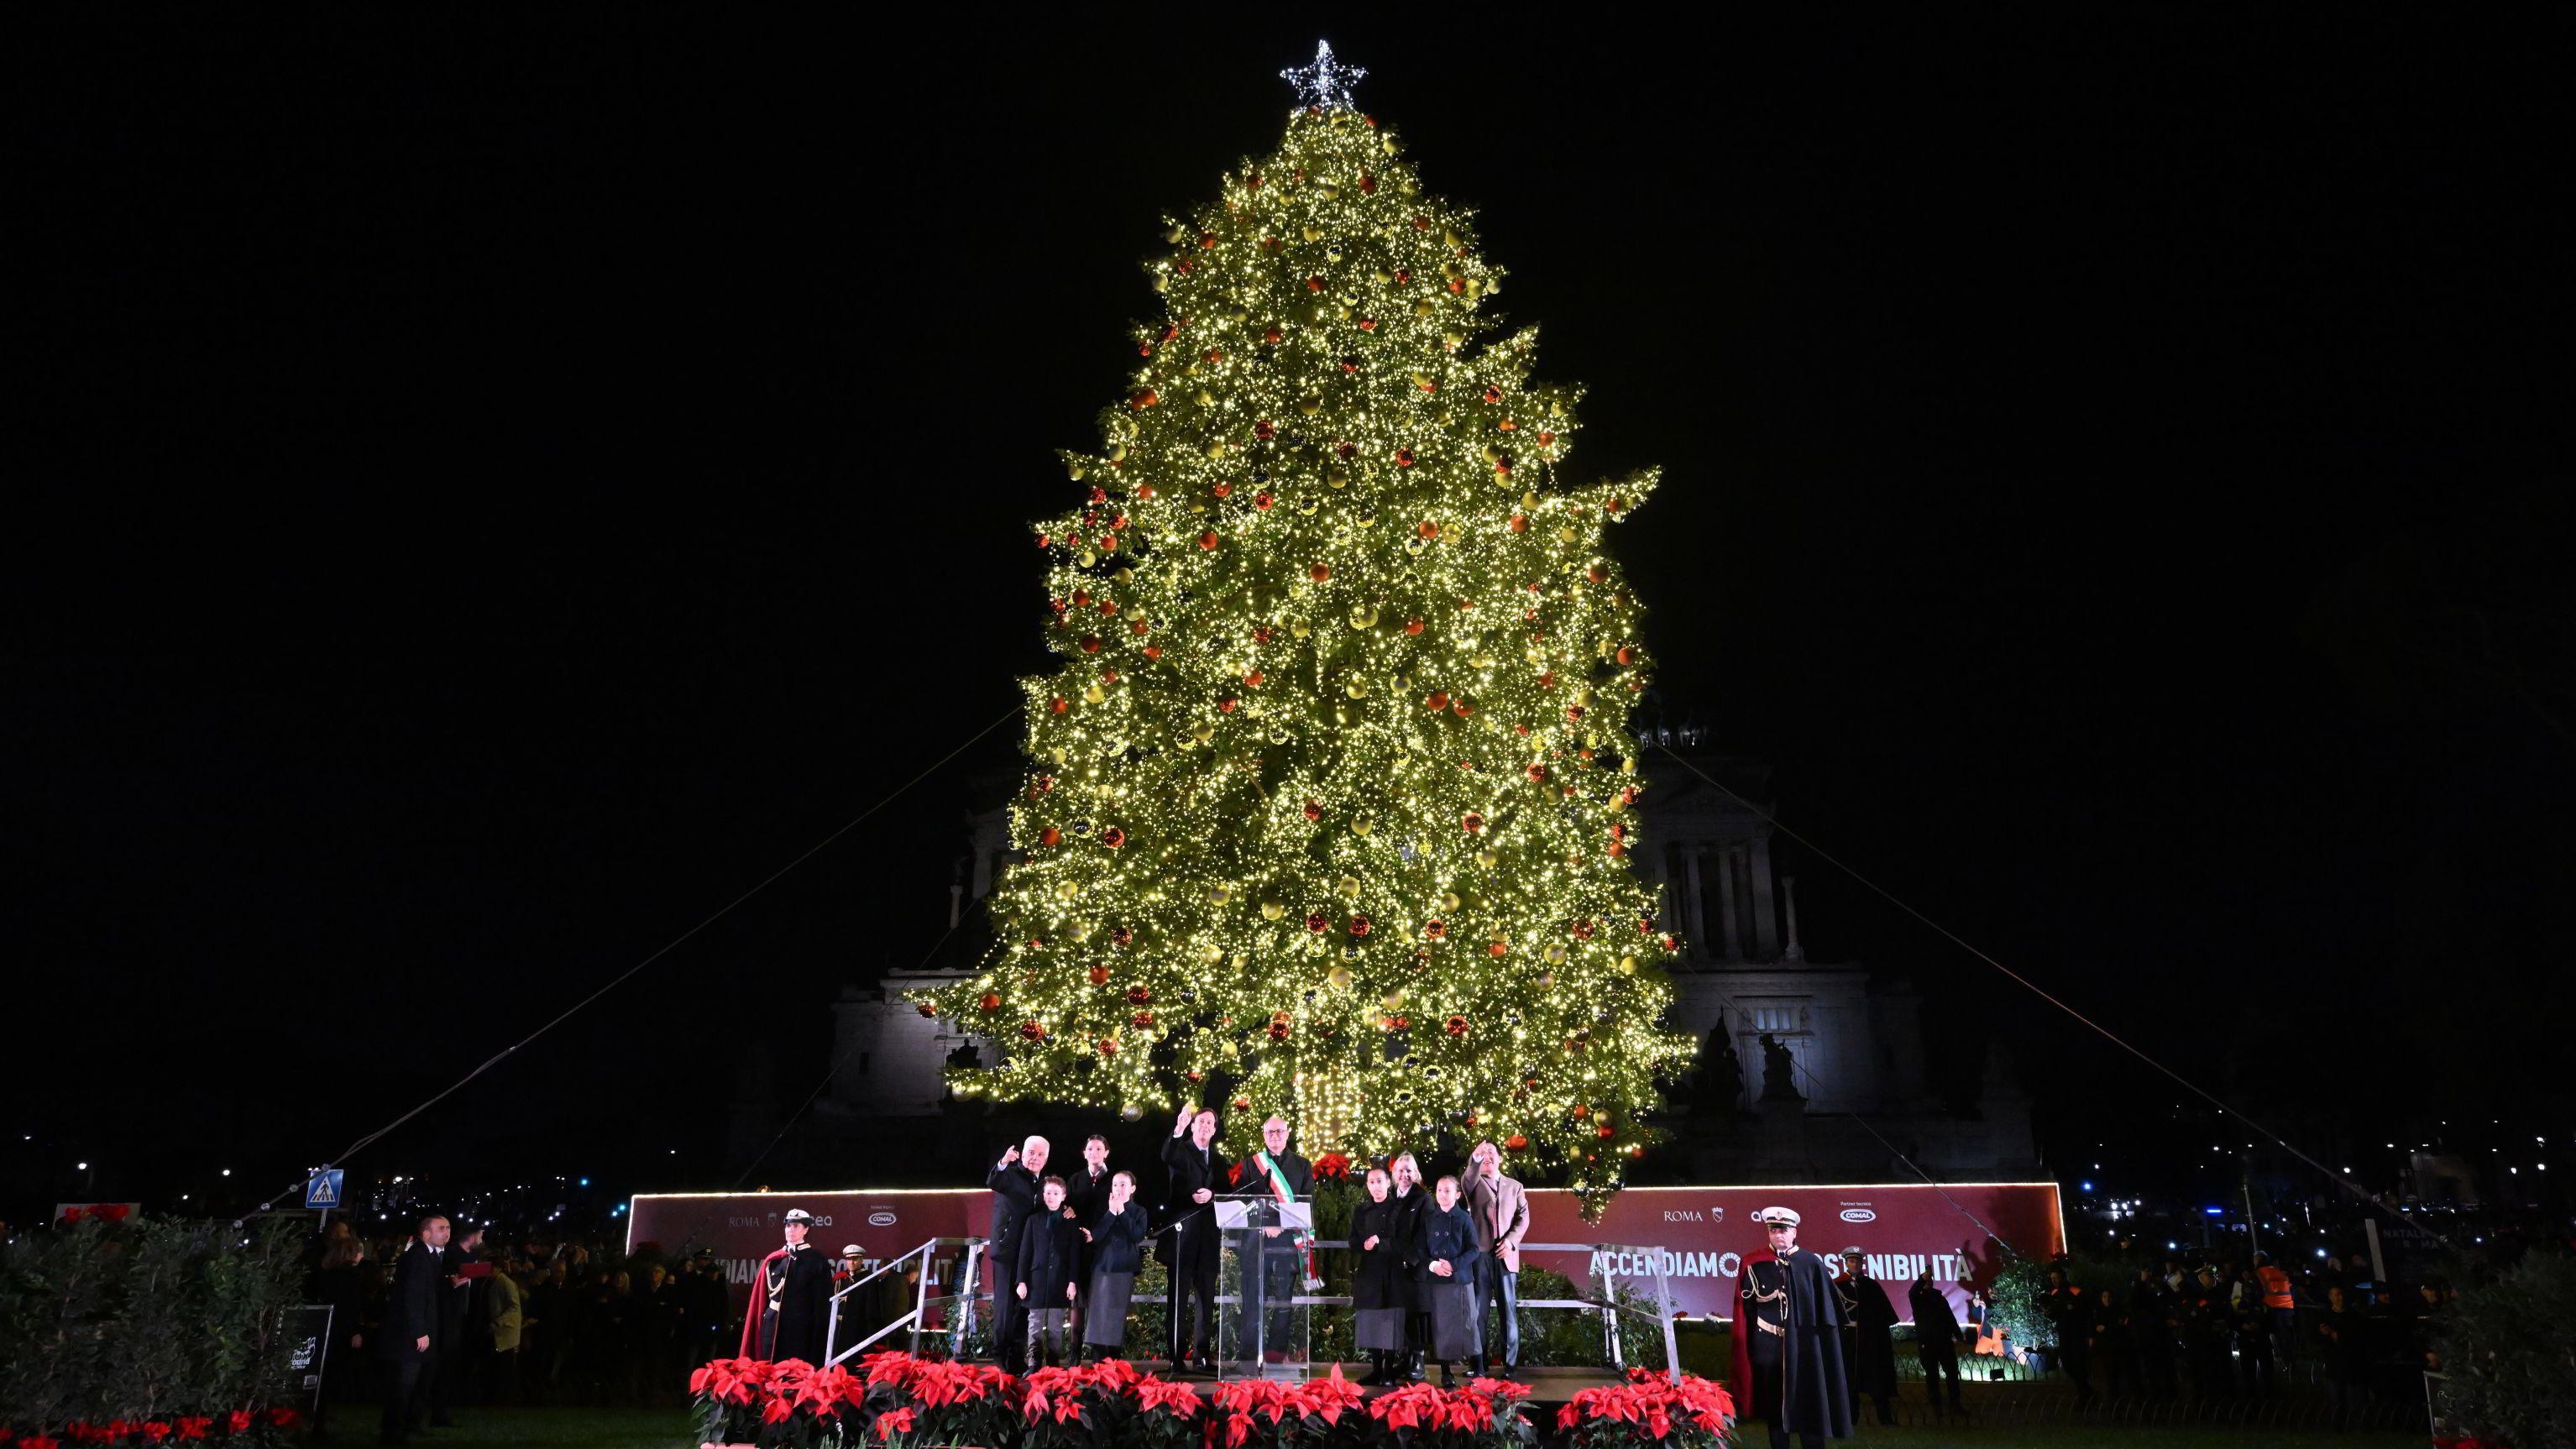 Roma encendió su árbol de Navidad ecológico y desató la polémica